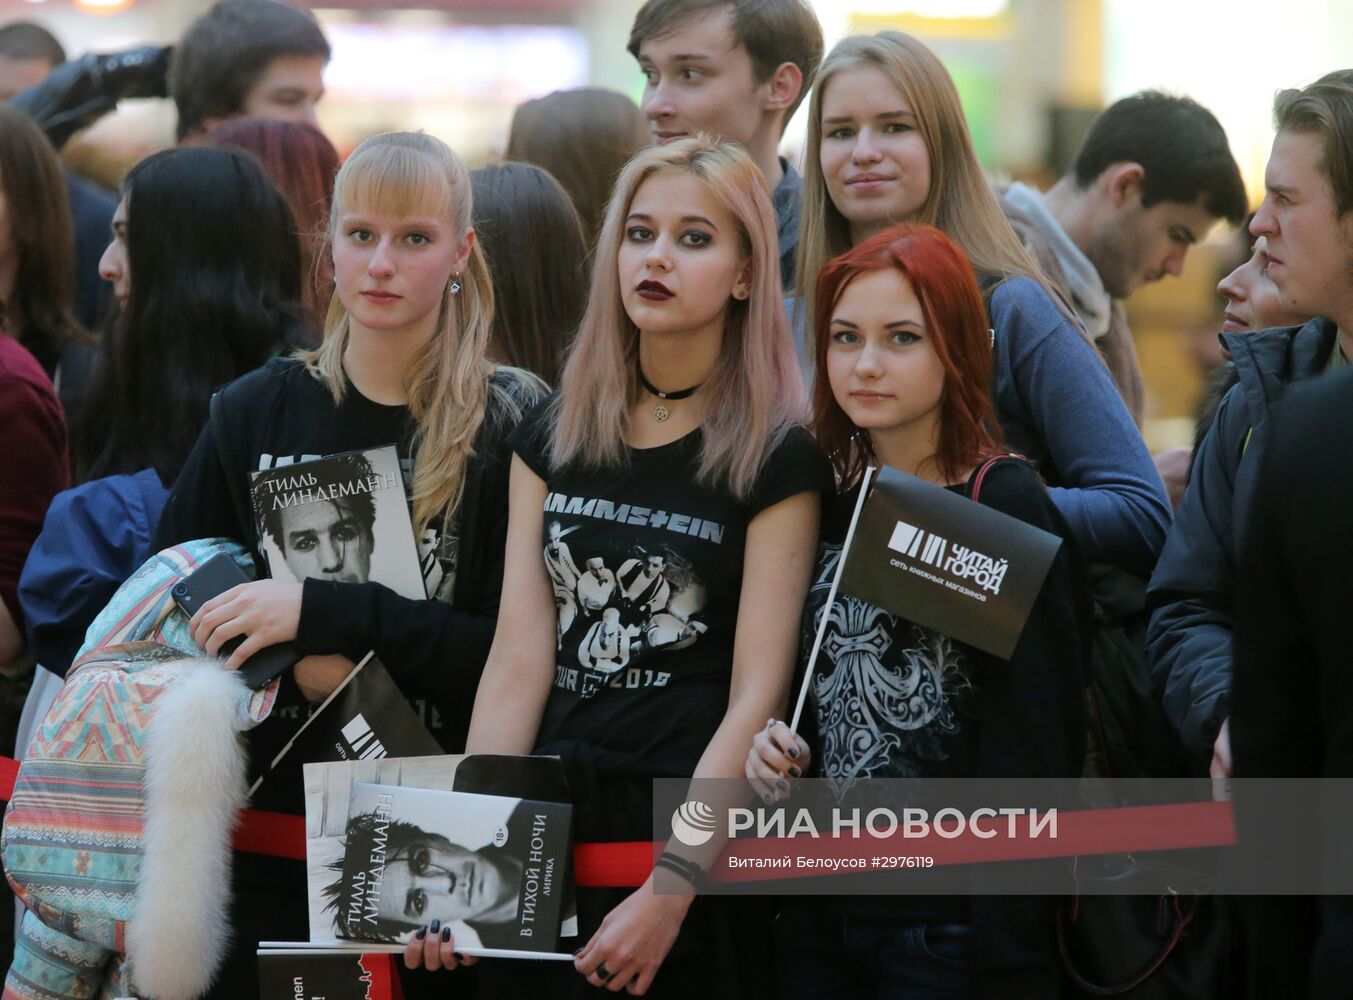 Солист Rammstein Тилль Линдеманн представил свою книгу в Москве